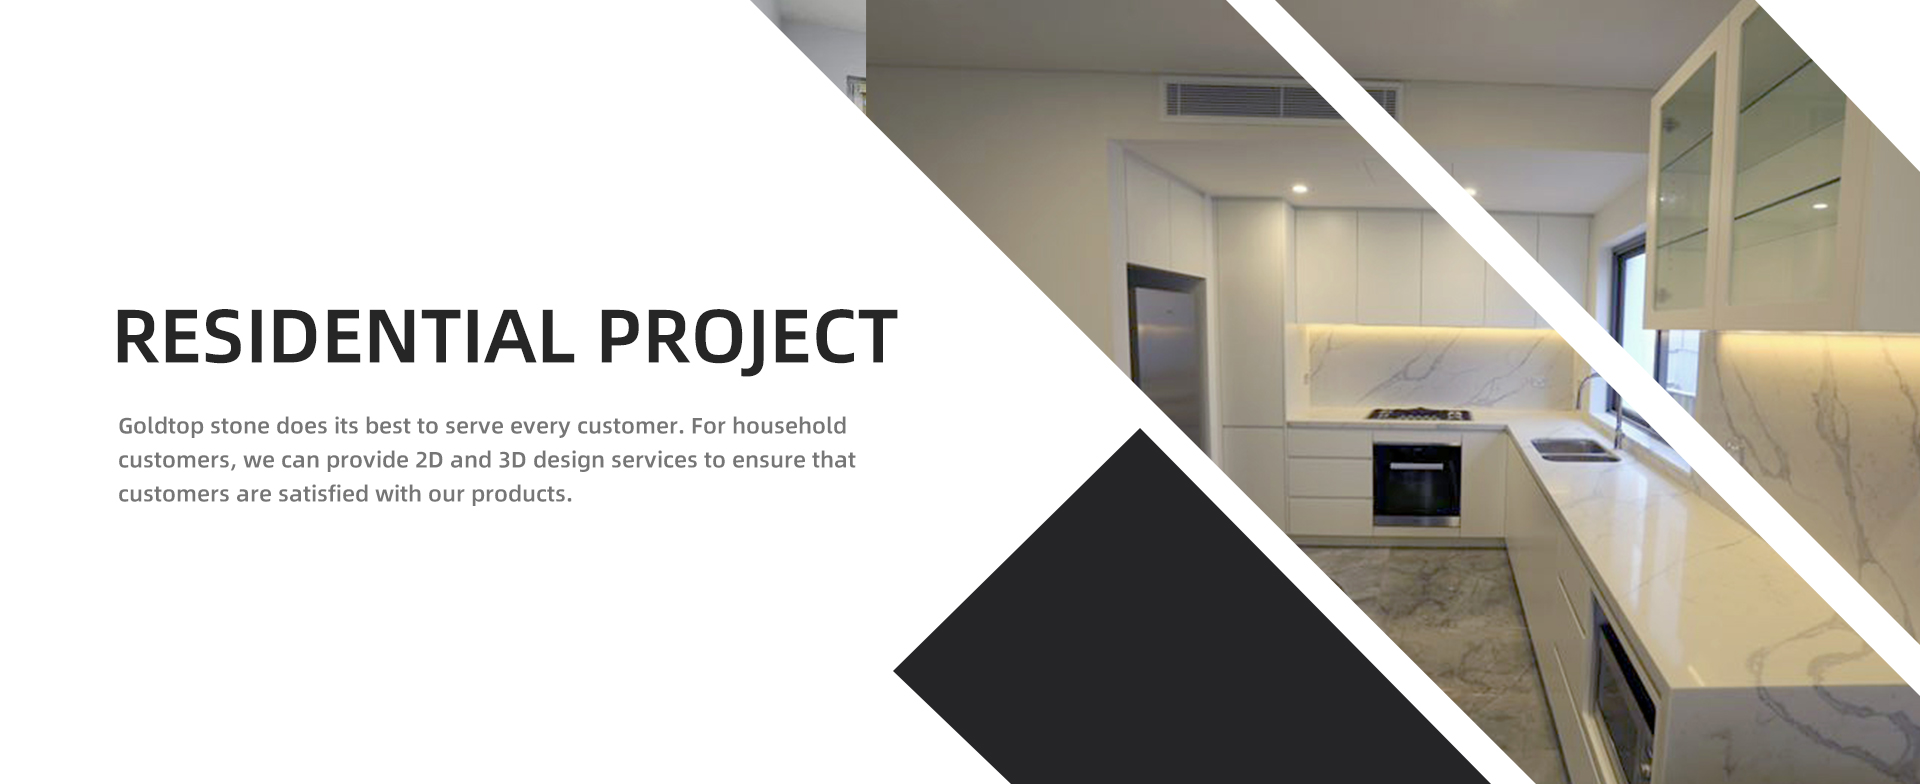 Residential Project Goldtop stone tekee parhaansa palvellakseen jokaista asiakasta. Kotitalousasiakkaille voimme tarjota 2D- ja 3D-suunnittelupalveluita varmistaaksemme, että asiakkaat ovat tyytyväisiä tuotteisiimme.